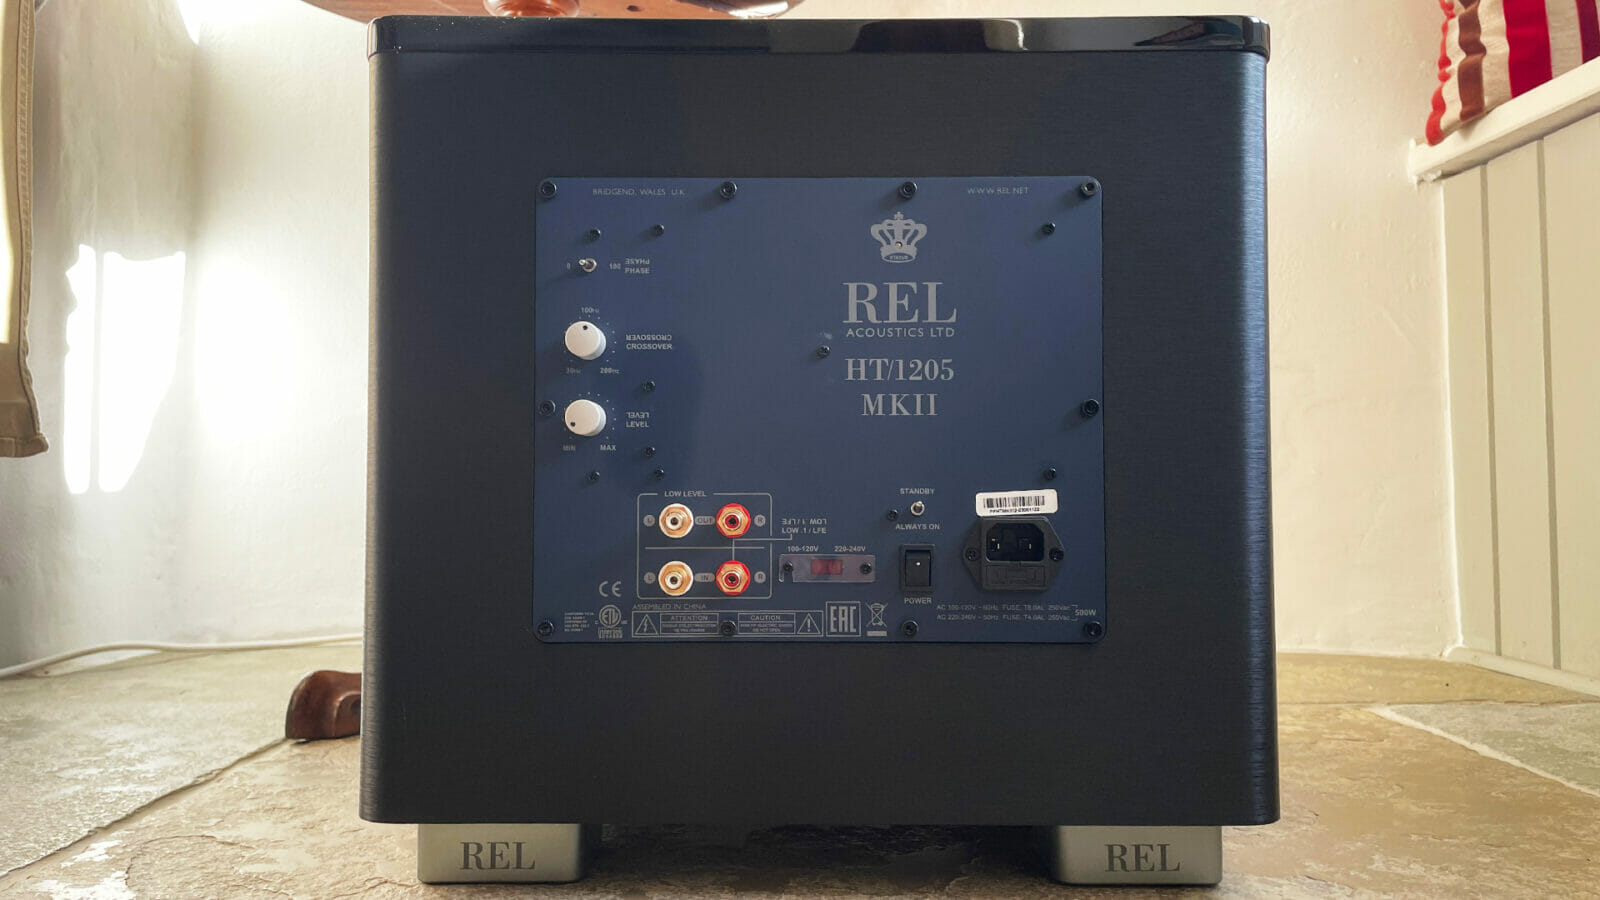 REL HT/1205 MK II Audiograde